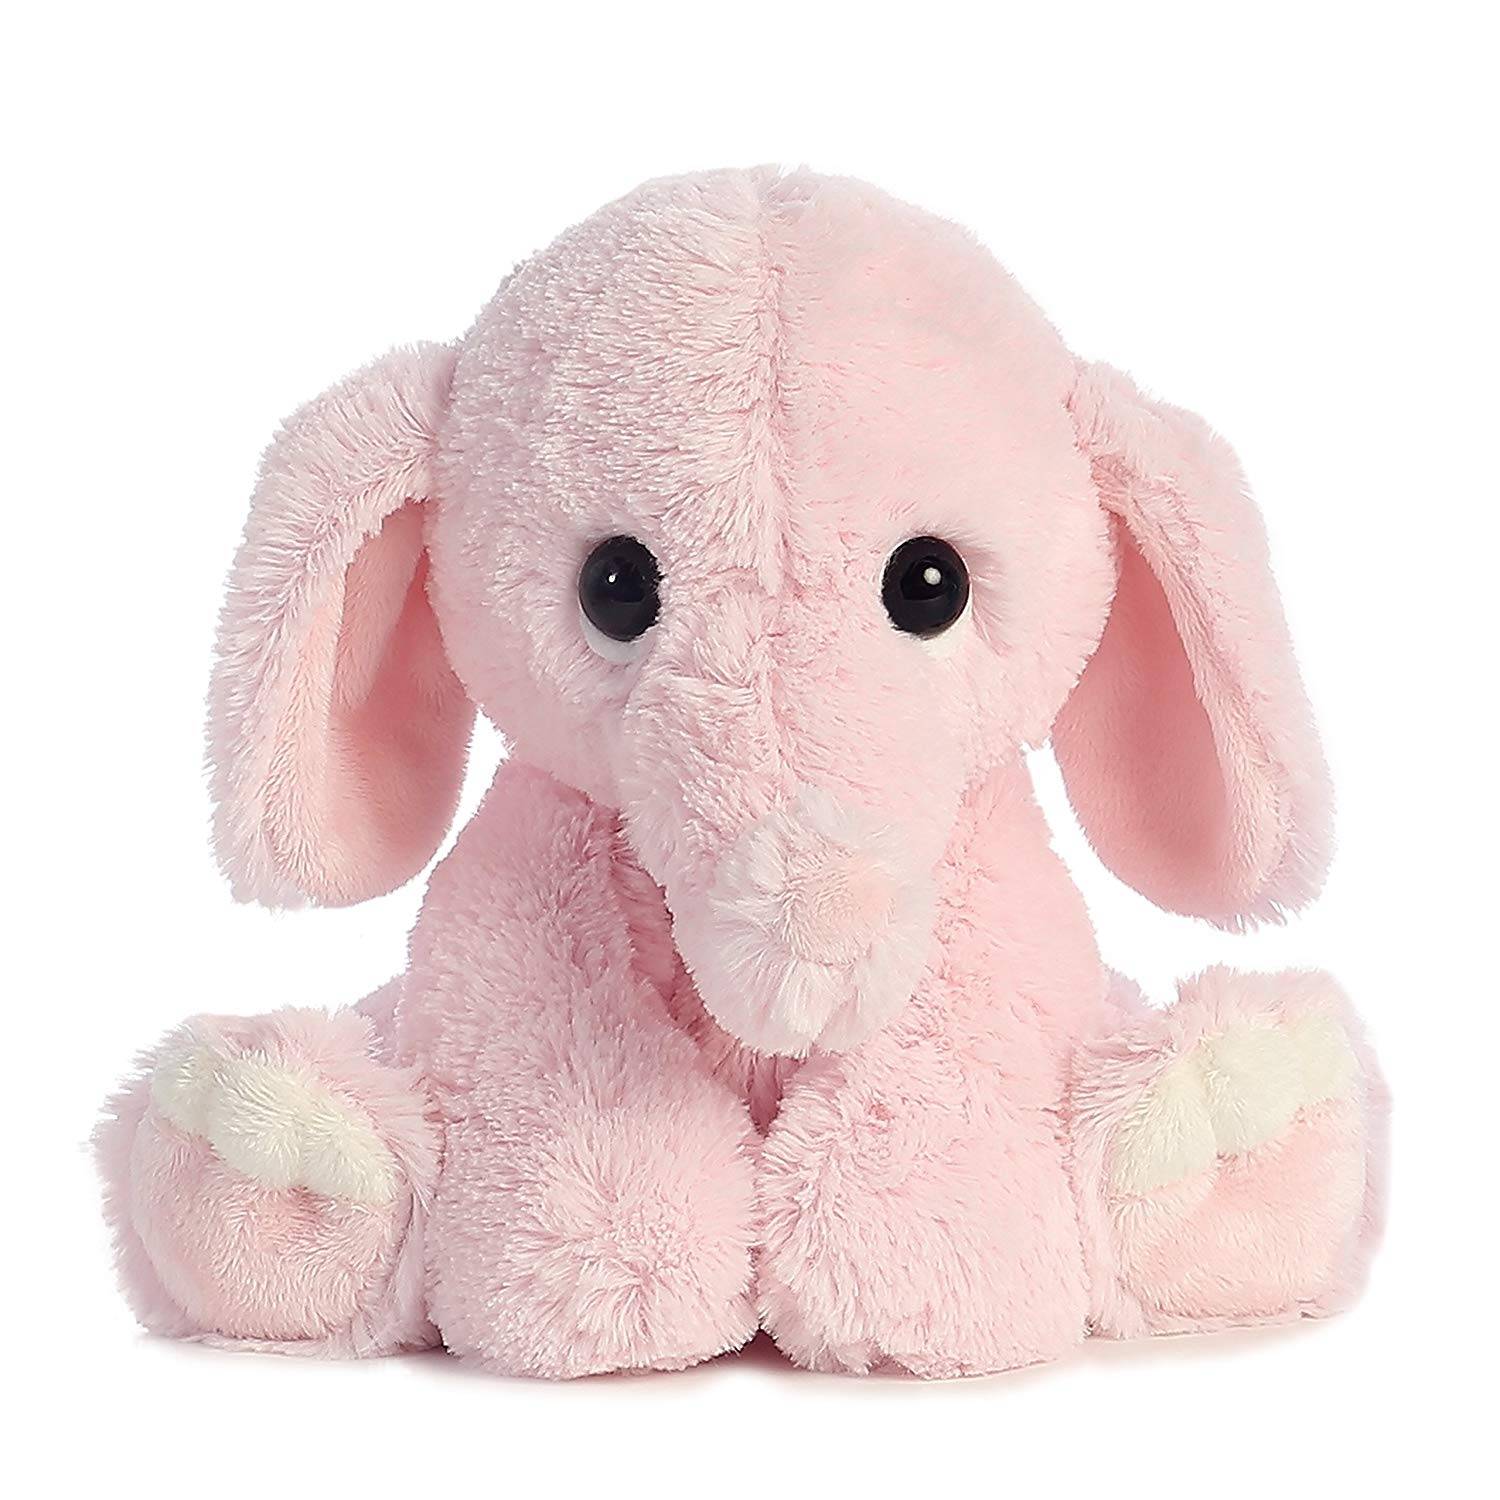 bella rosa velboa pelo lungo grande peluche farcito elefante giocattolo morbido per i bambini